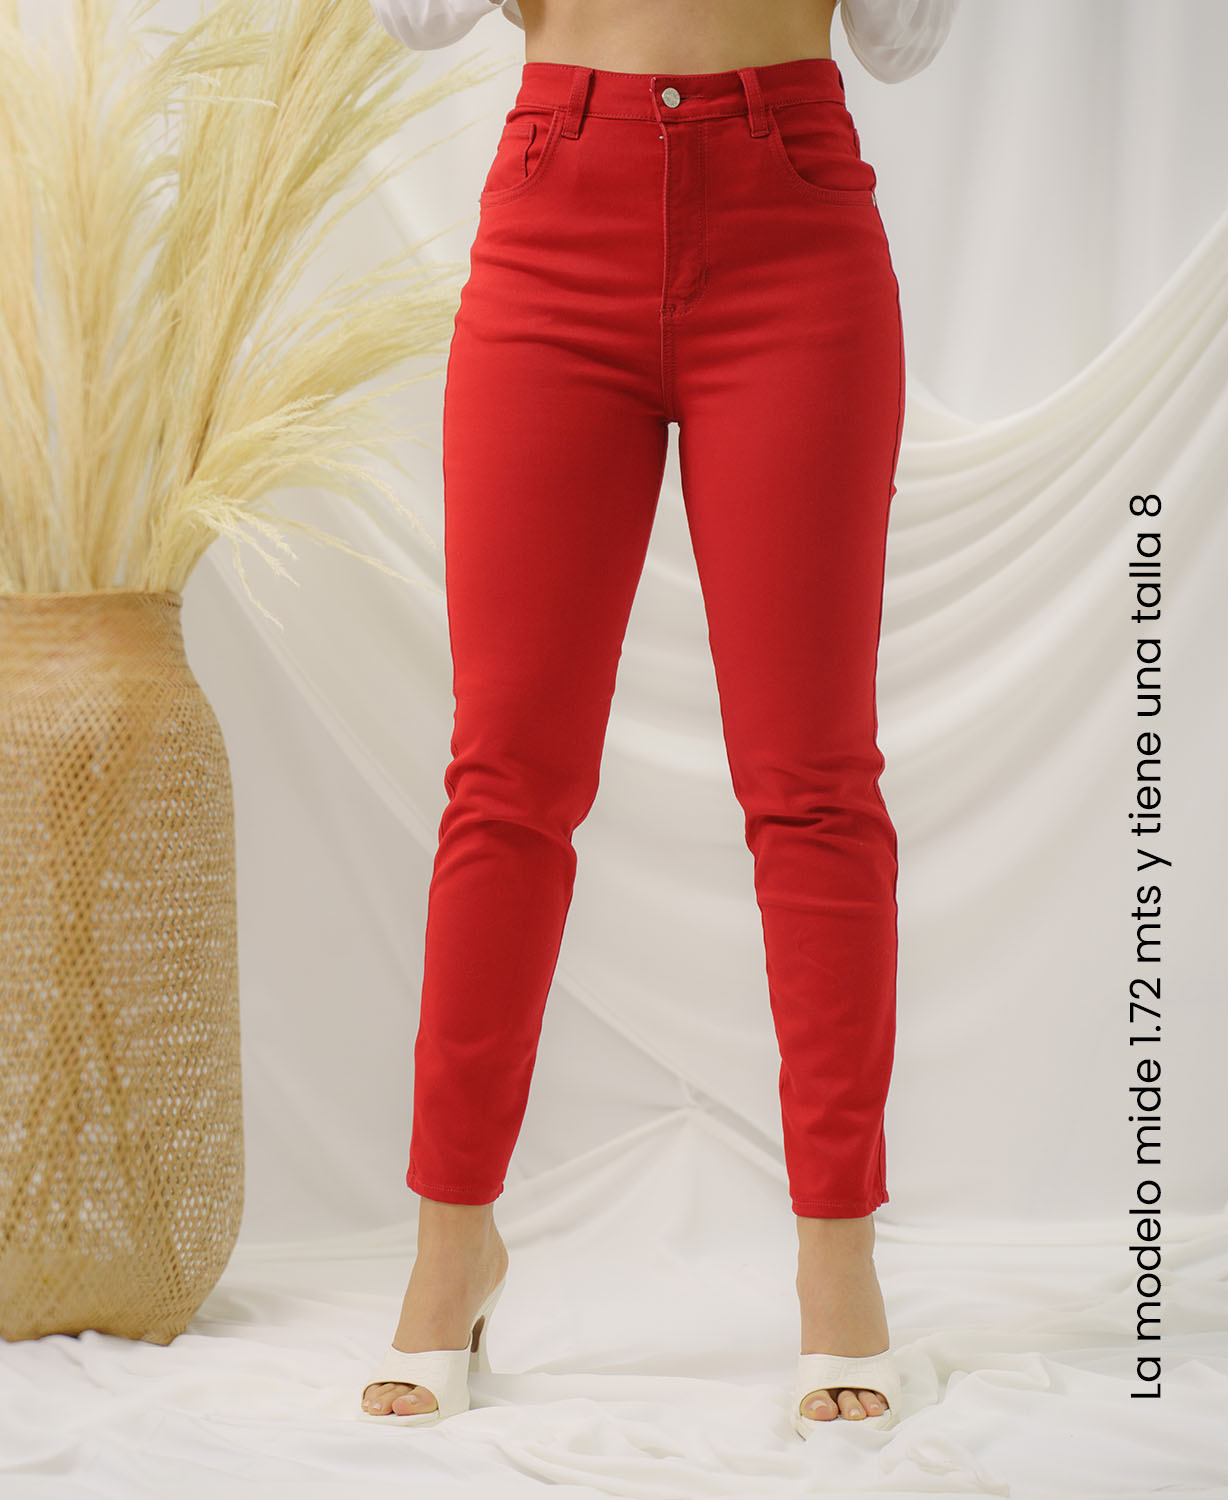  Capellini Ropa Roja Trasero Levantamiento Estilo Colombiano  Skinny Jeans, 2, Rojo (Rouge Red) : Ropa, Zapatos y Joyería